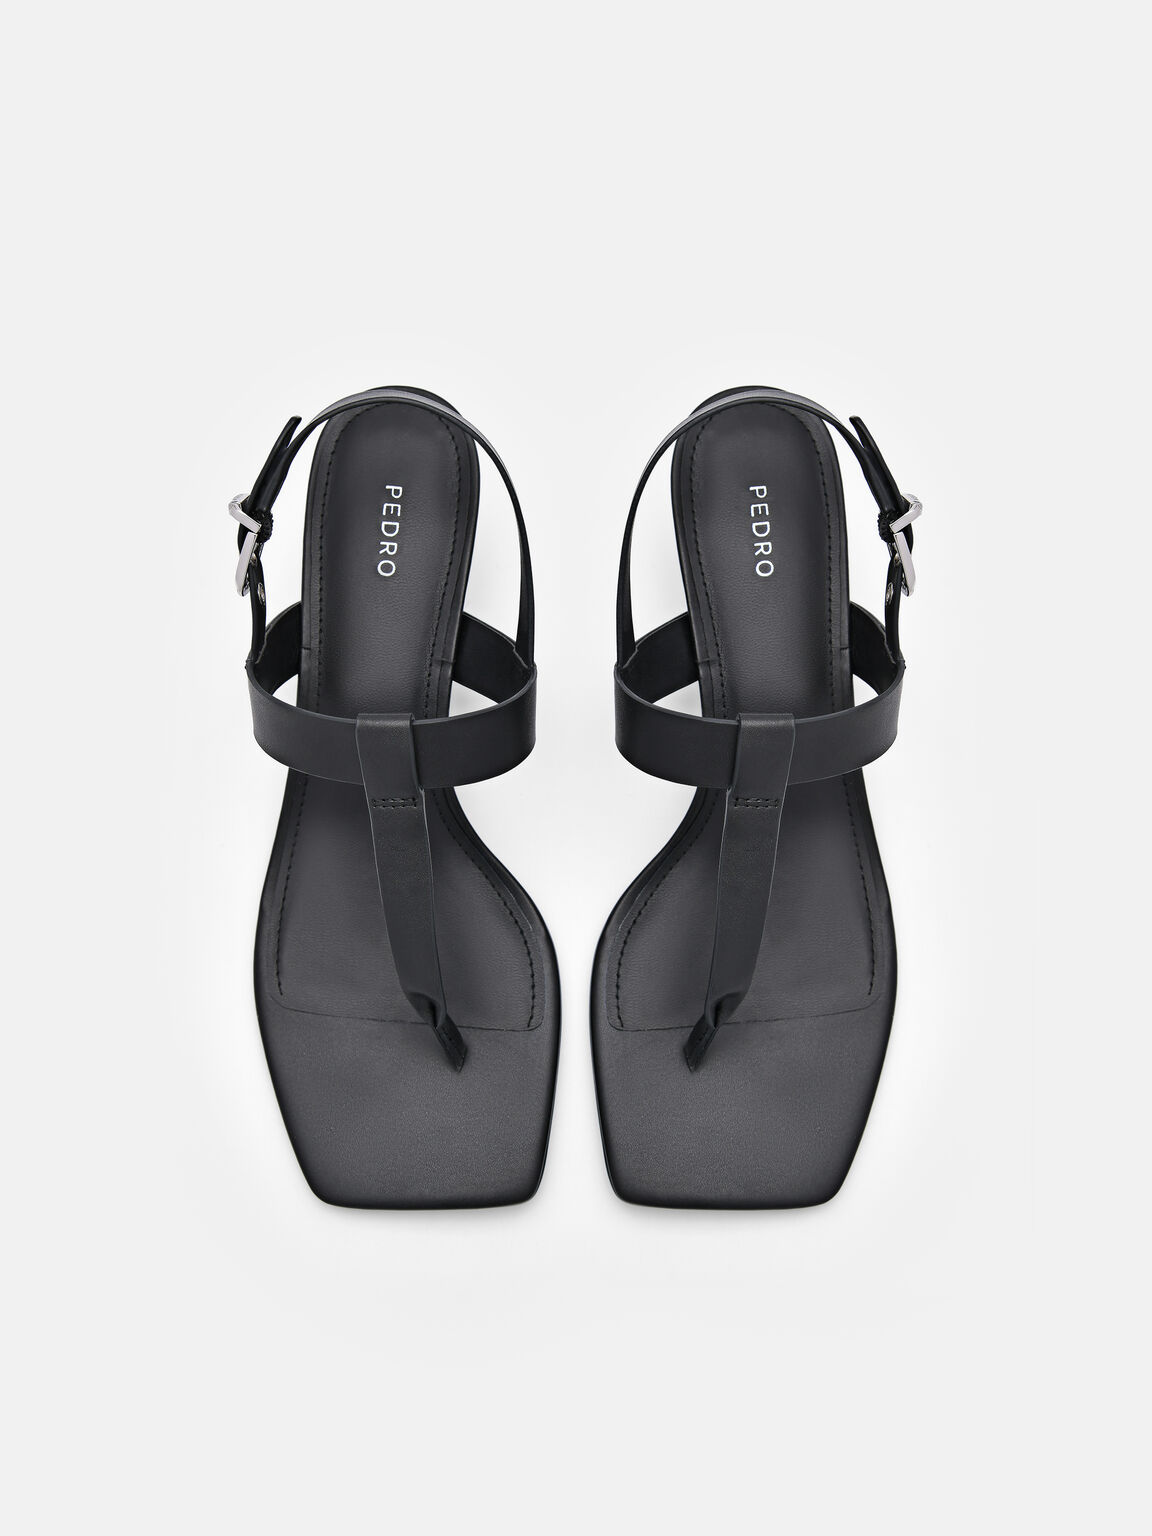 Helix Heel Sandals, Black, hi-res